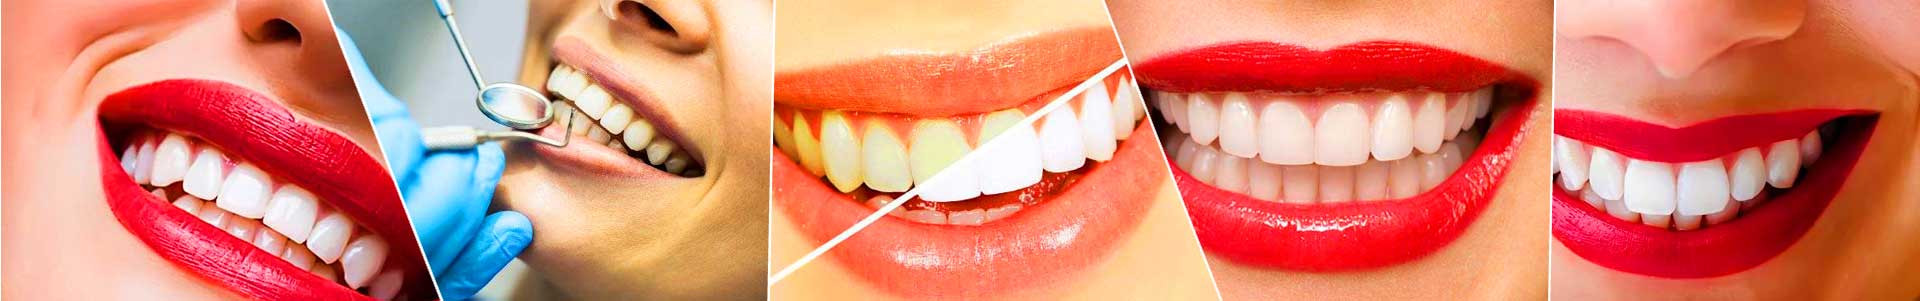 بهترین خرید دندانپزشکی افق البرز کرج با بیشترین درصد تخفیف در قیمت - جدید